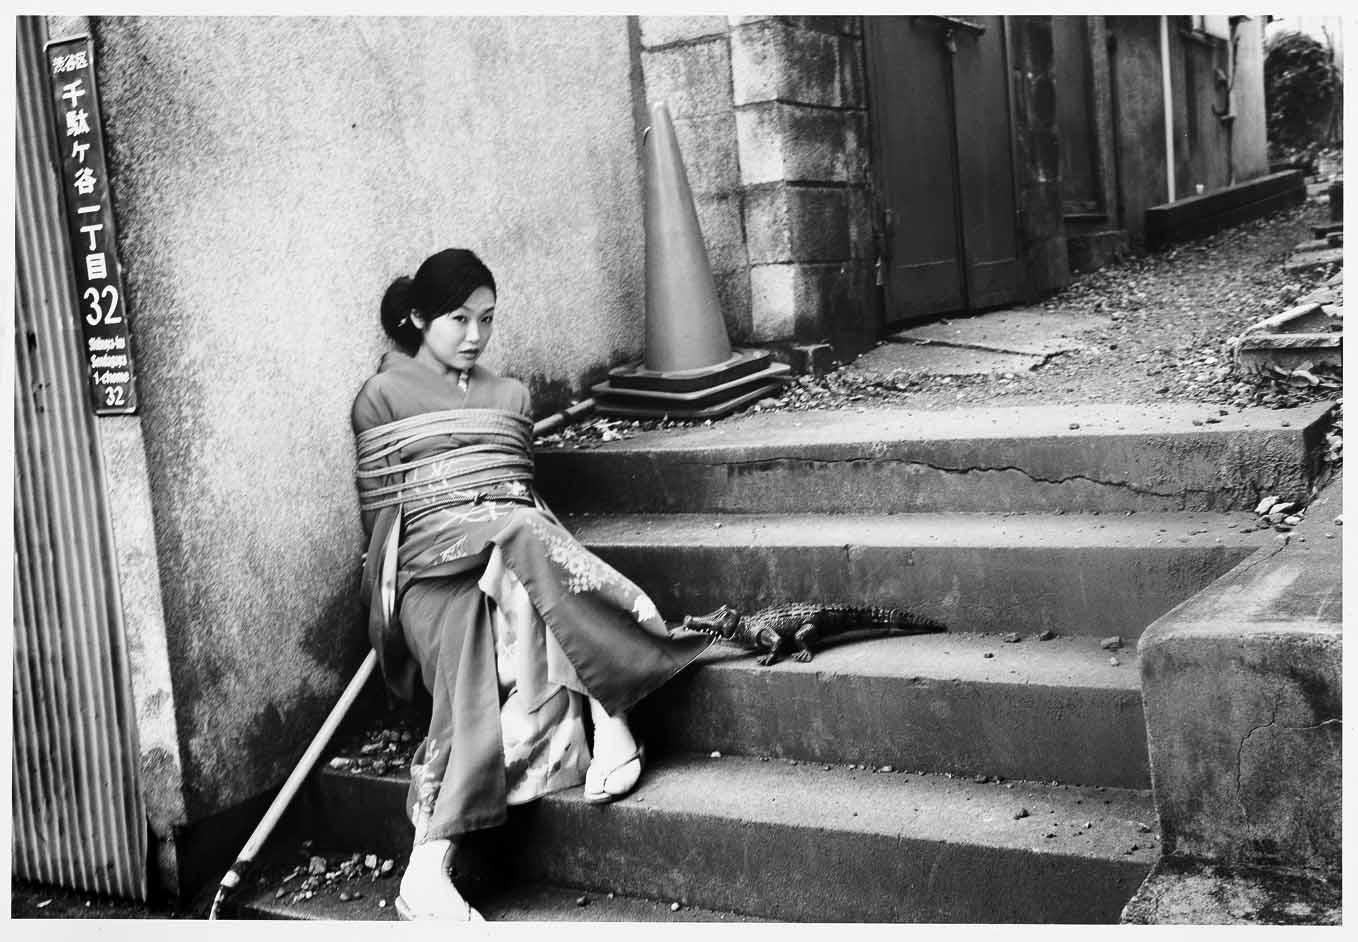 69YK #3 – Nobuyoshi Araki, Japanese Photography, Nude, Black and White, Art